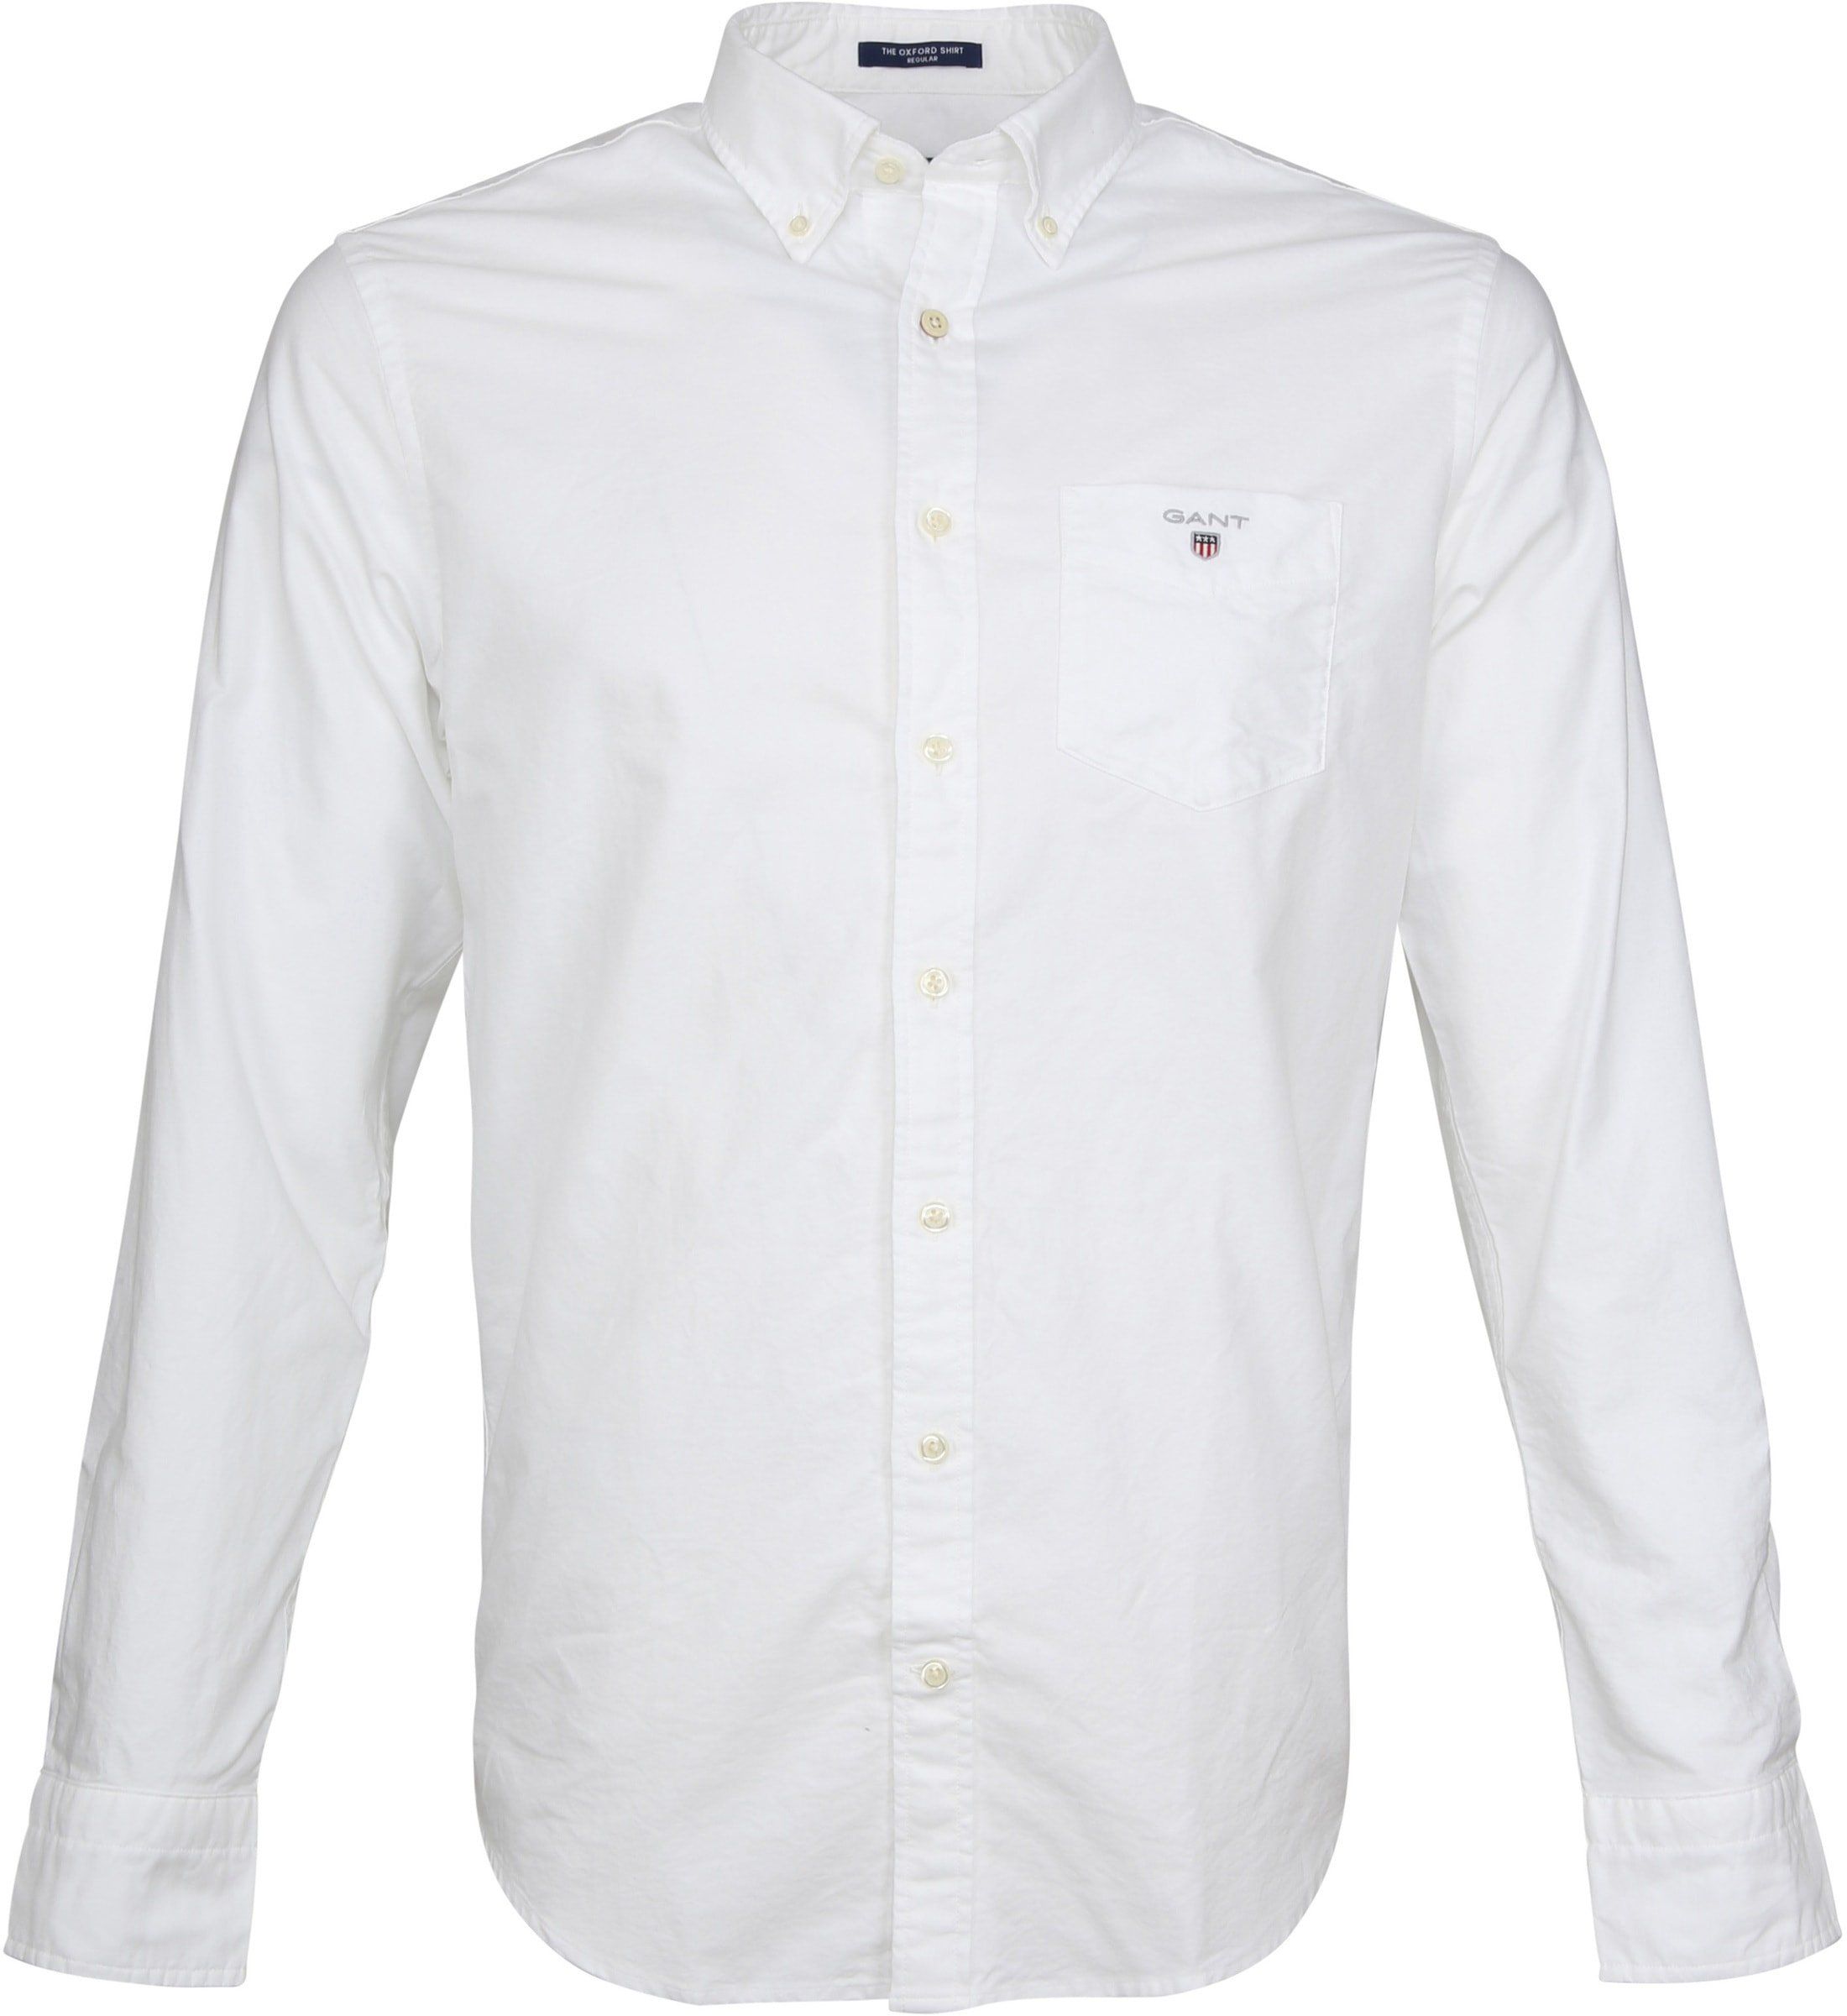 Gant Casual Shirt Oxford White size 4XL